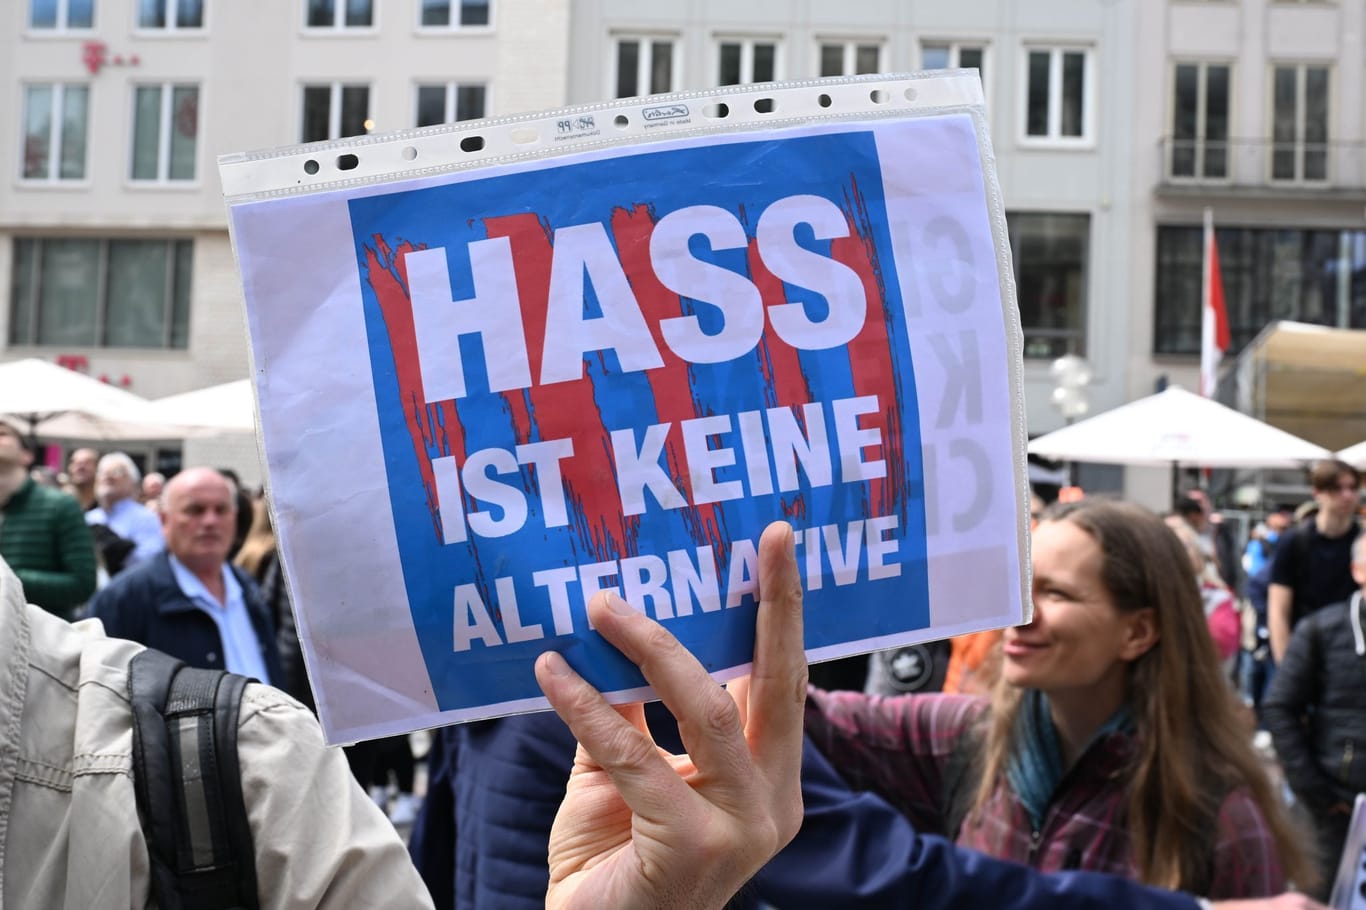 Demonstranten in München: "Hass ist keine Alternative"